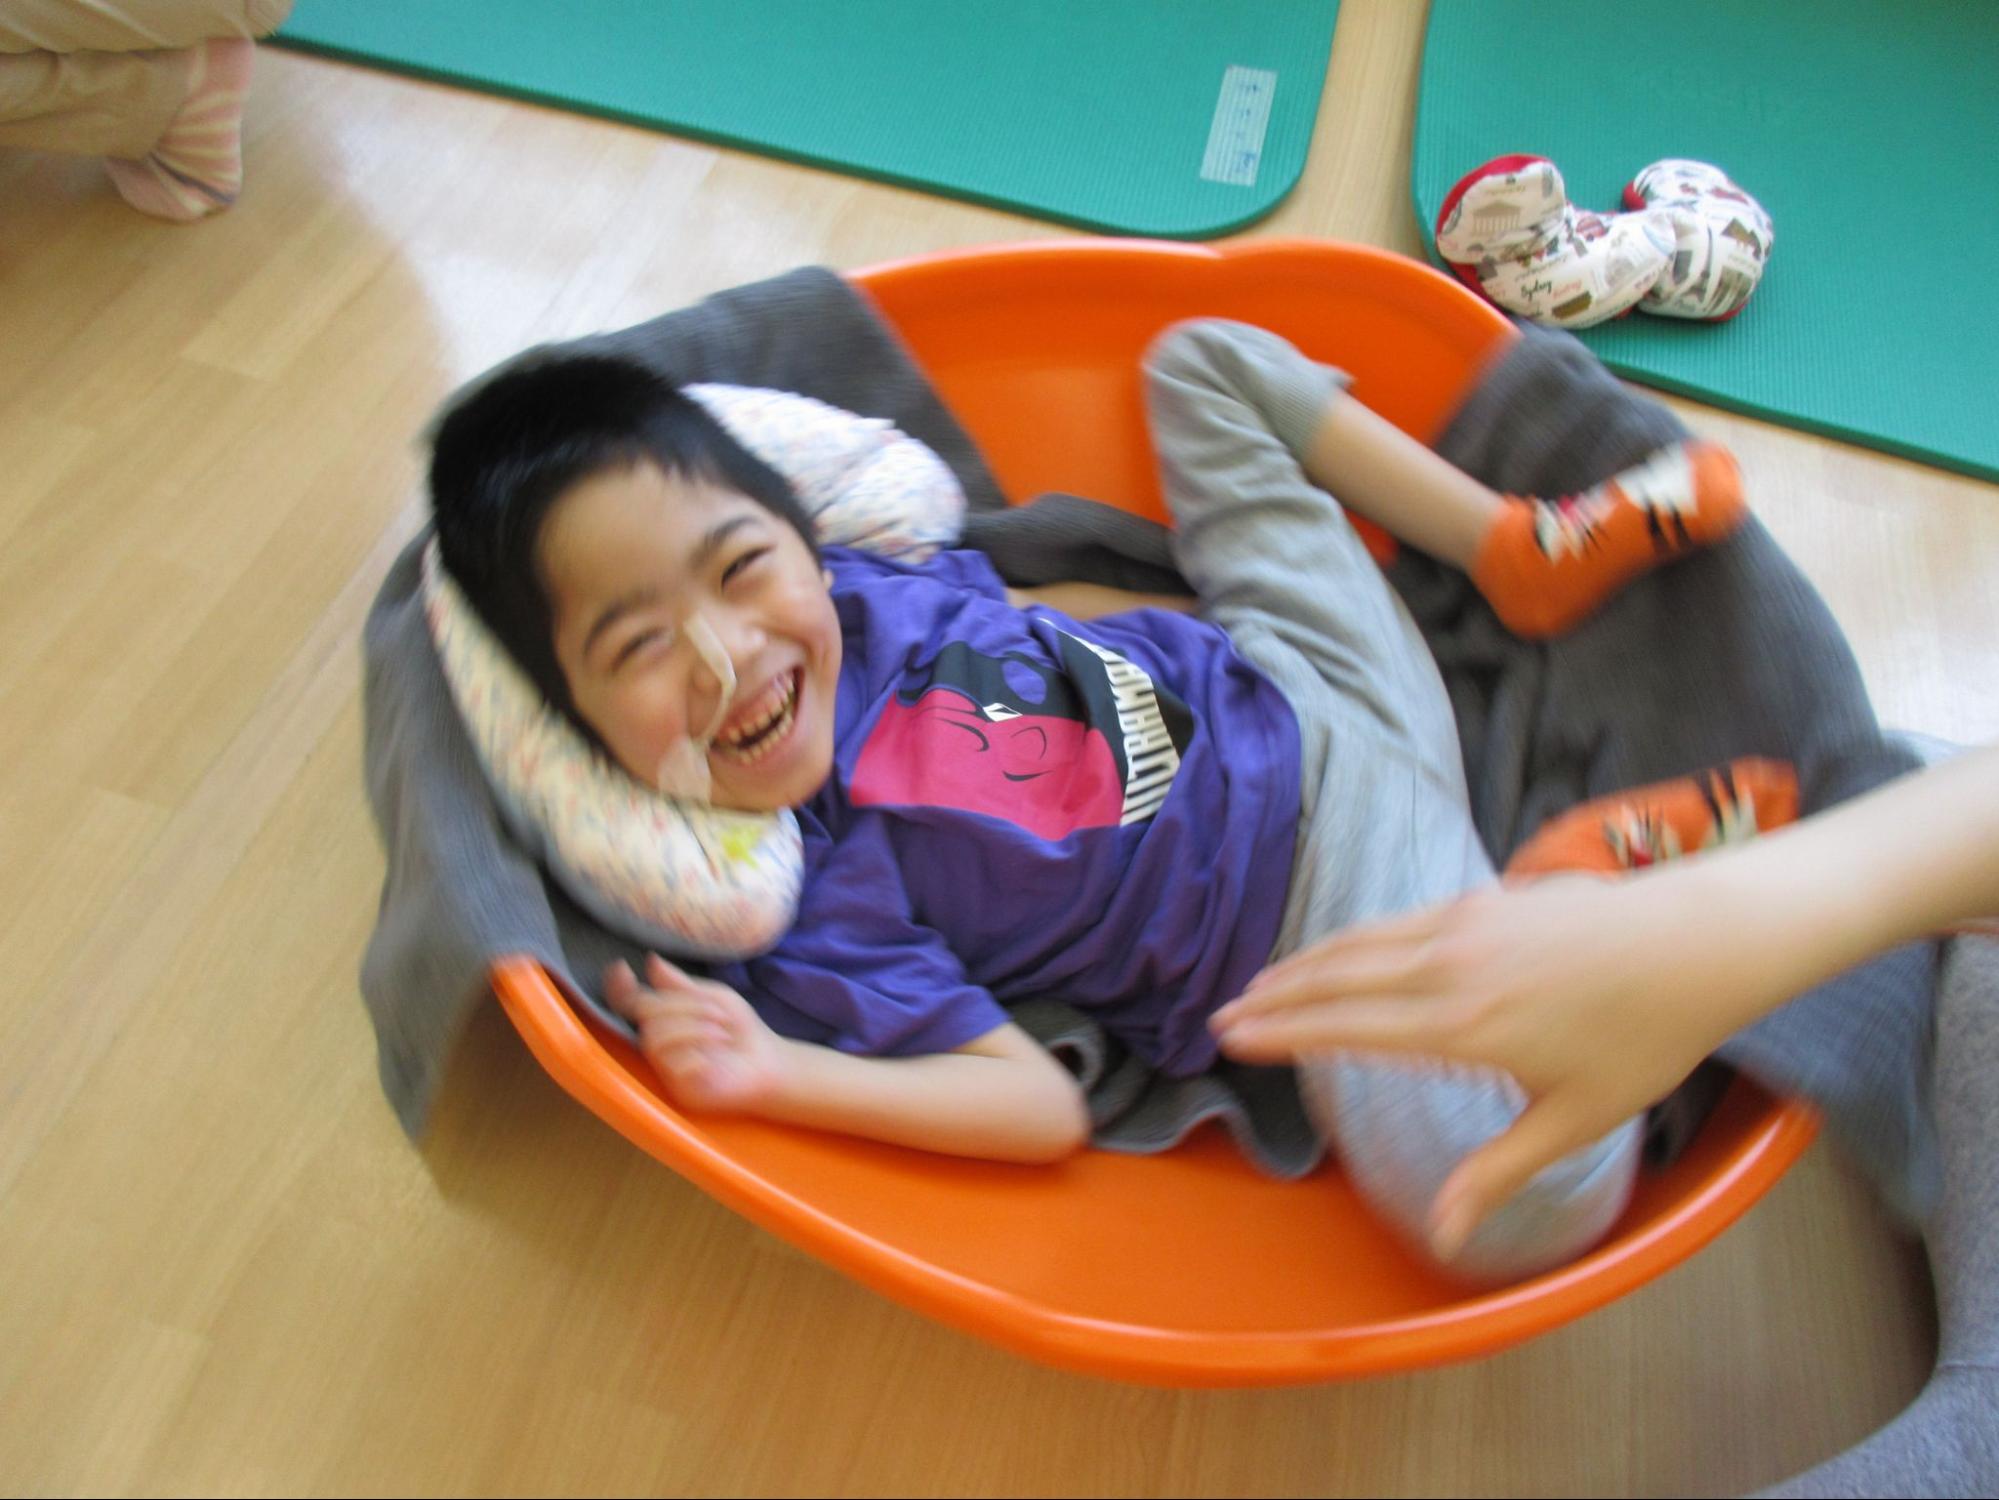 男の子が丸い大きなお椀のような形をした器具の中に横たわり、ぐるぐる回っている。楽しさで興奮してはちきれそうな笑顔でいる。